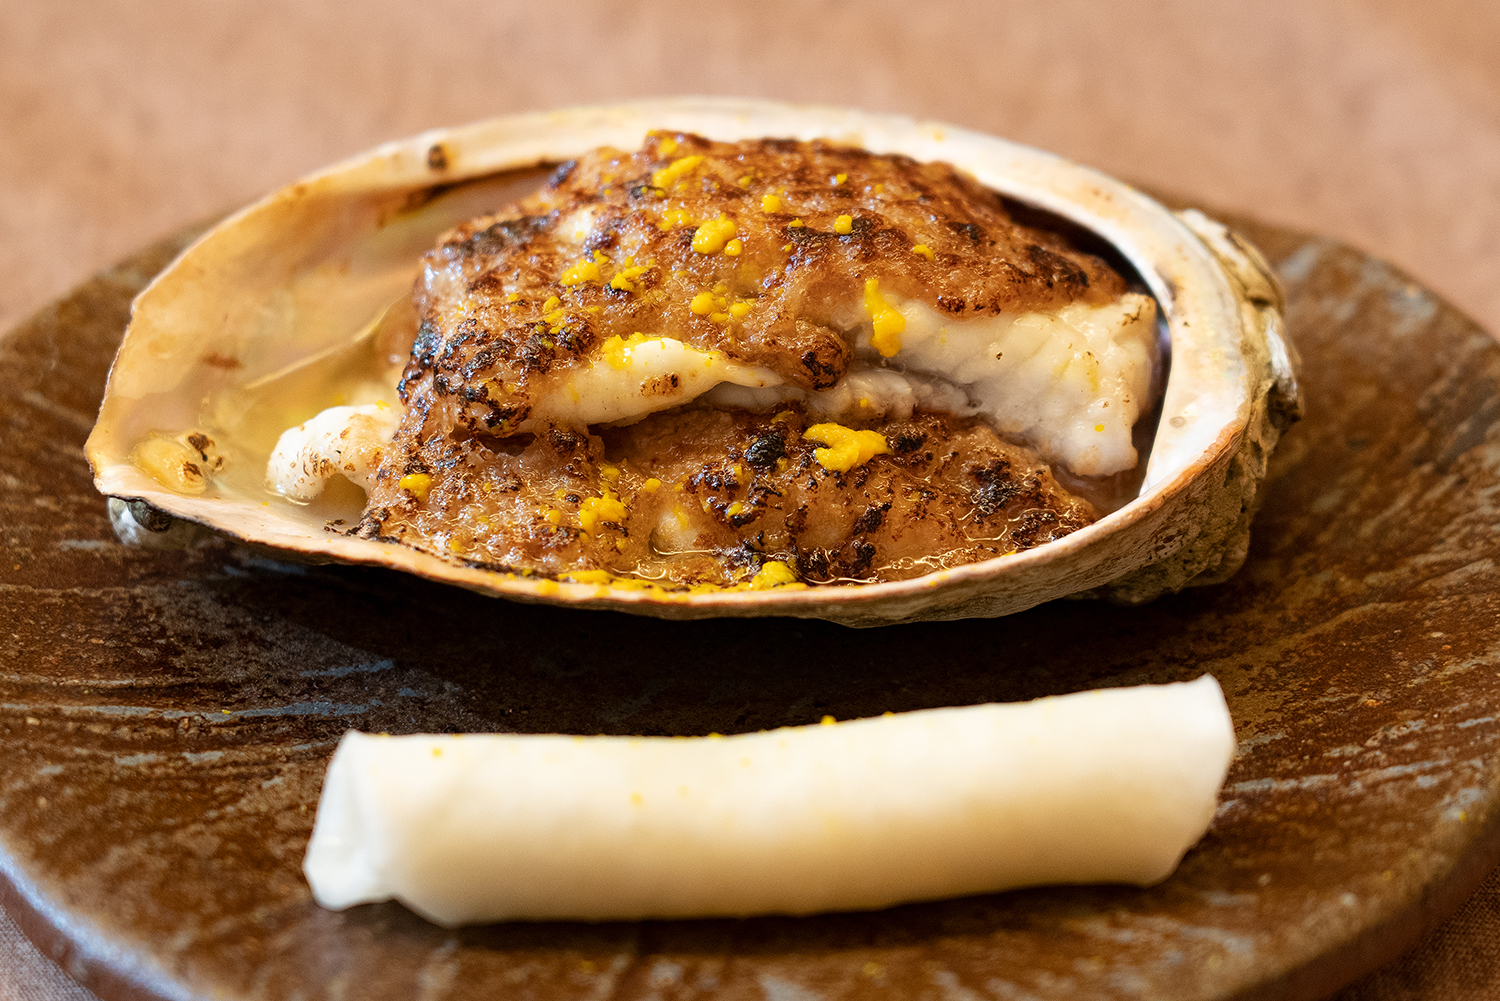 かわはぎ肝味噌焼き 海の恵み 食の底力 Japan 公式レシピサイト